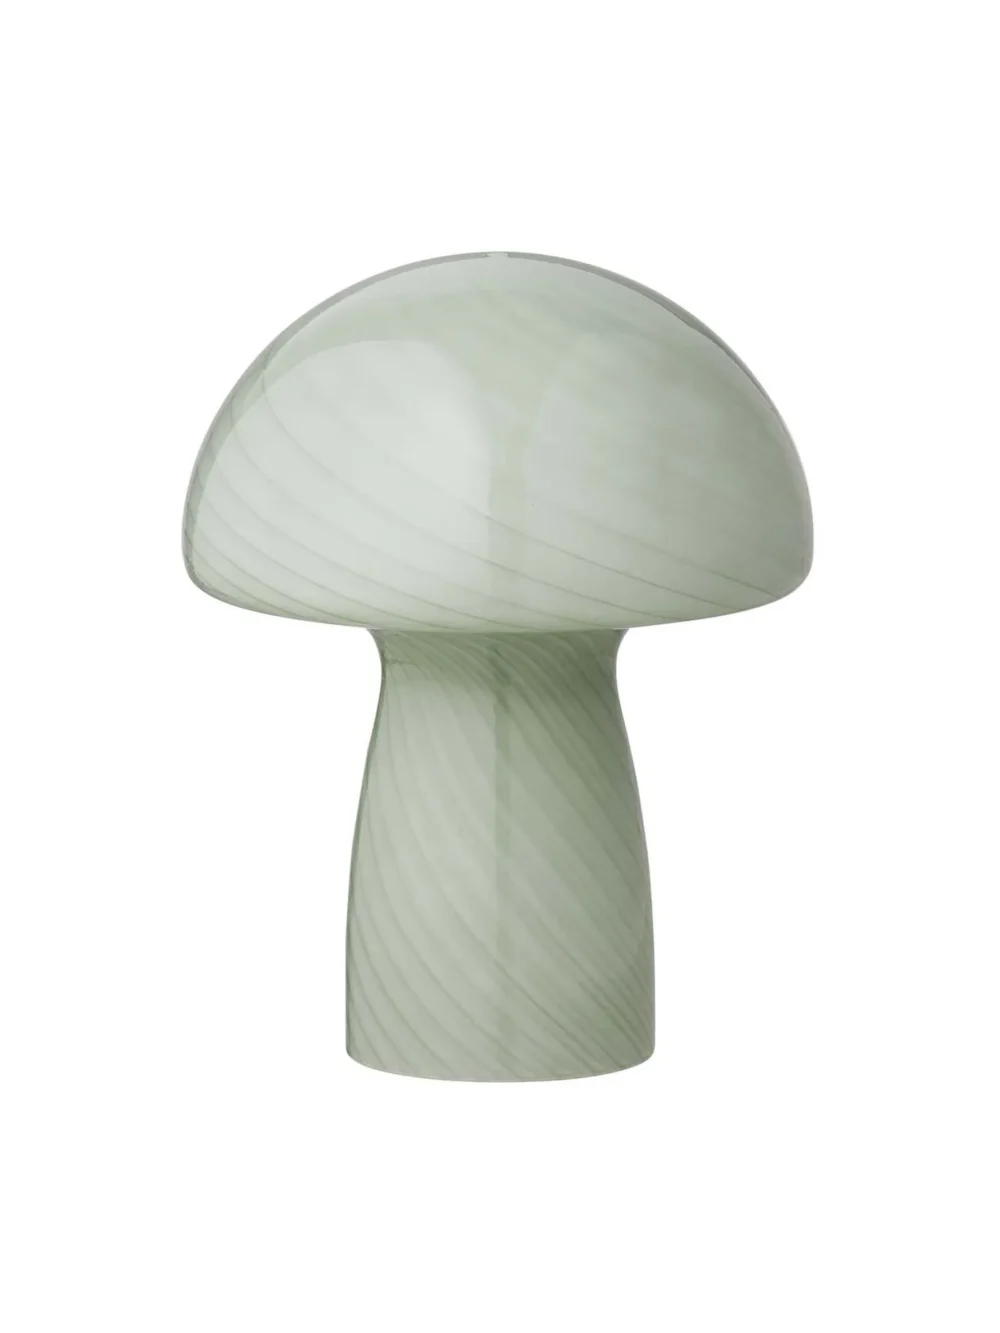 mintgrøn mushroom, mushroom lampe fra bahne,bordlampe, stor mushroom, lille mushroom